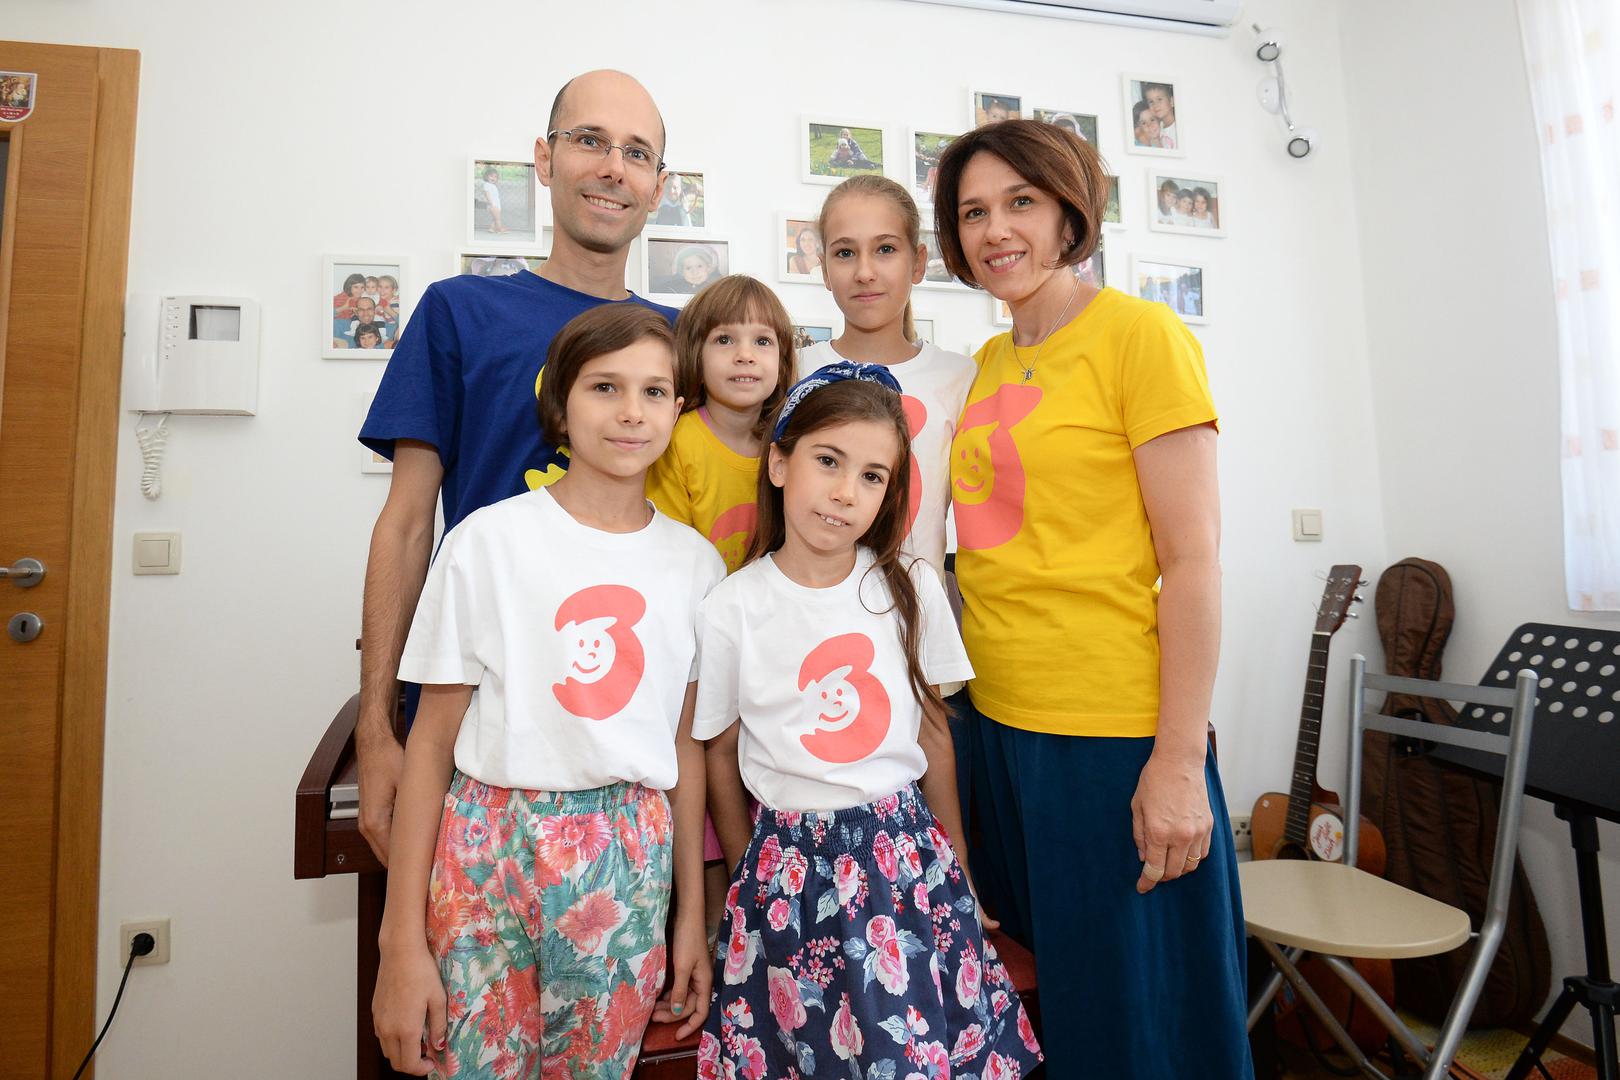 obitelj 3plus - Udruga obitelji s troje i više djece razvila je projekt obiteljske kartice, na slici njezin šef Ivan Malbašić s obitelji